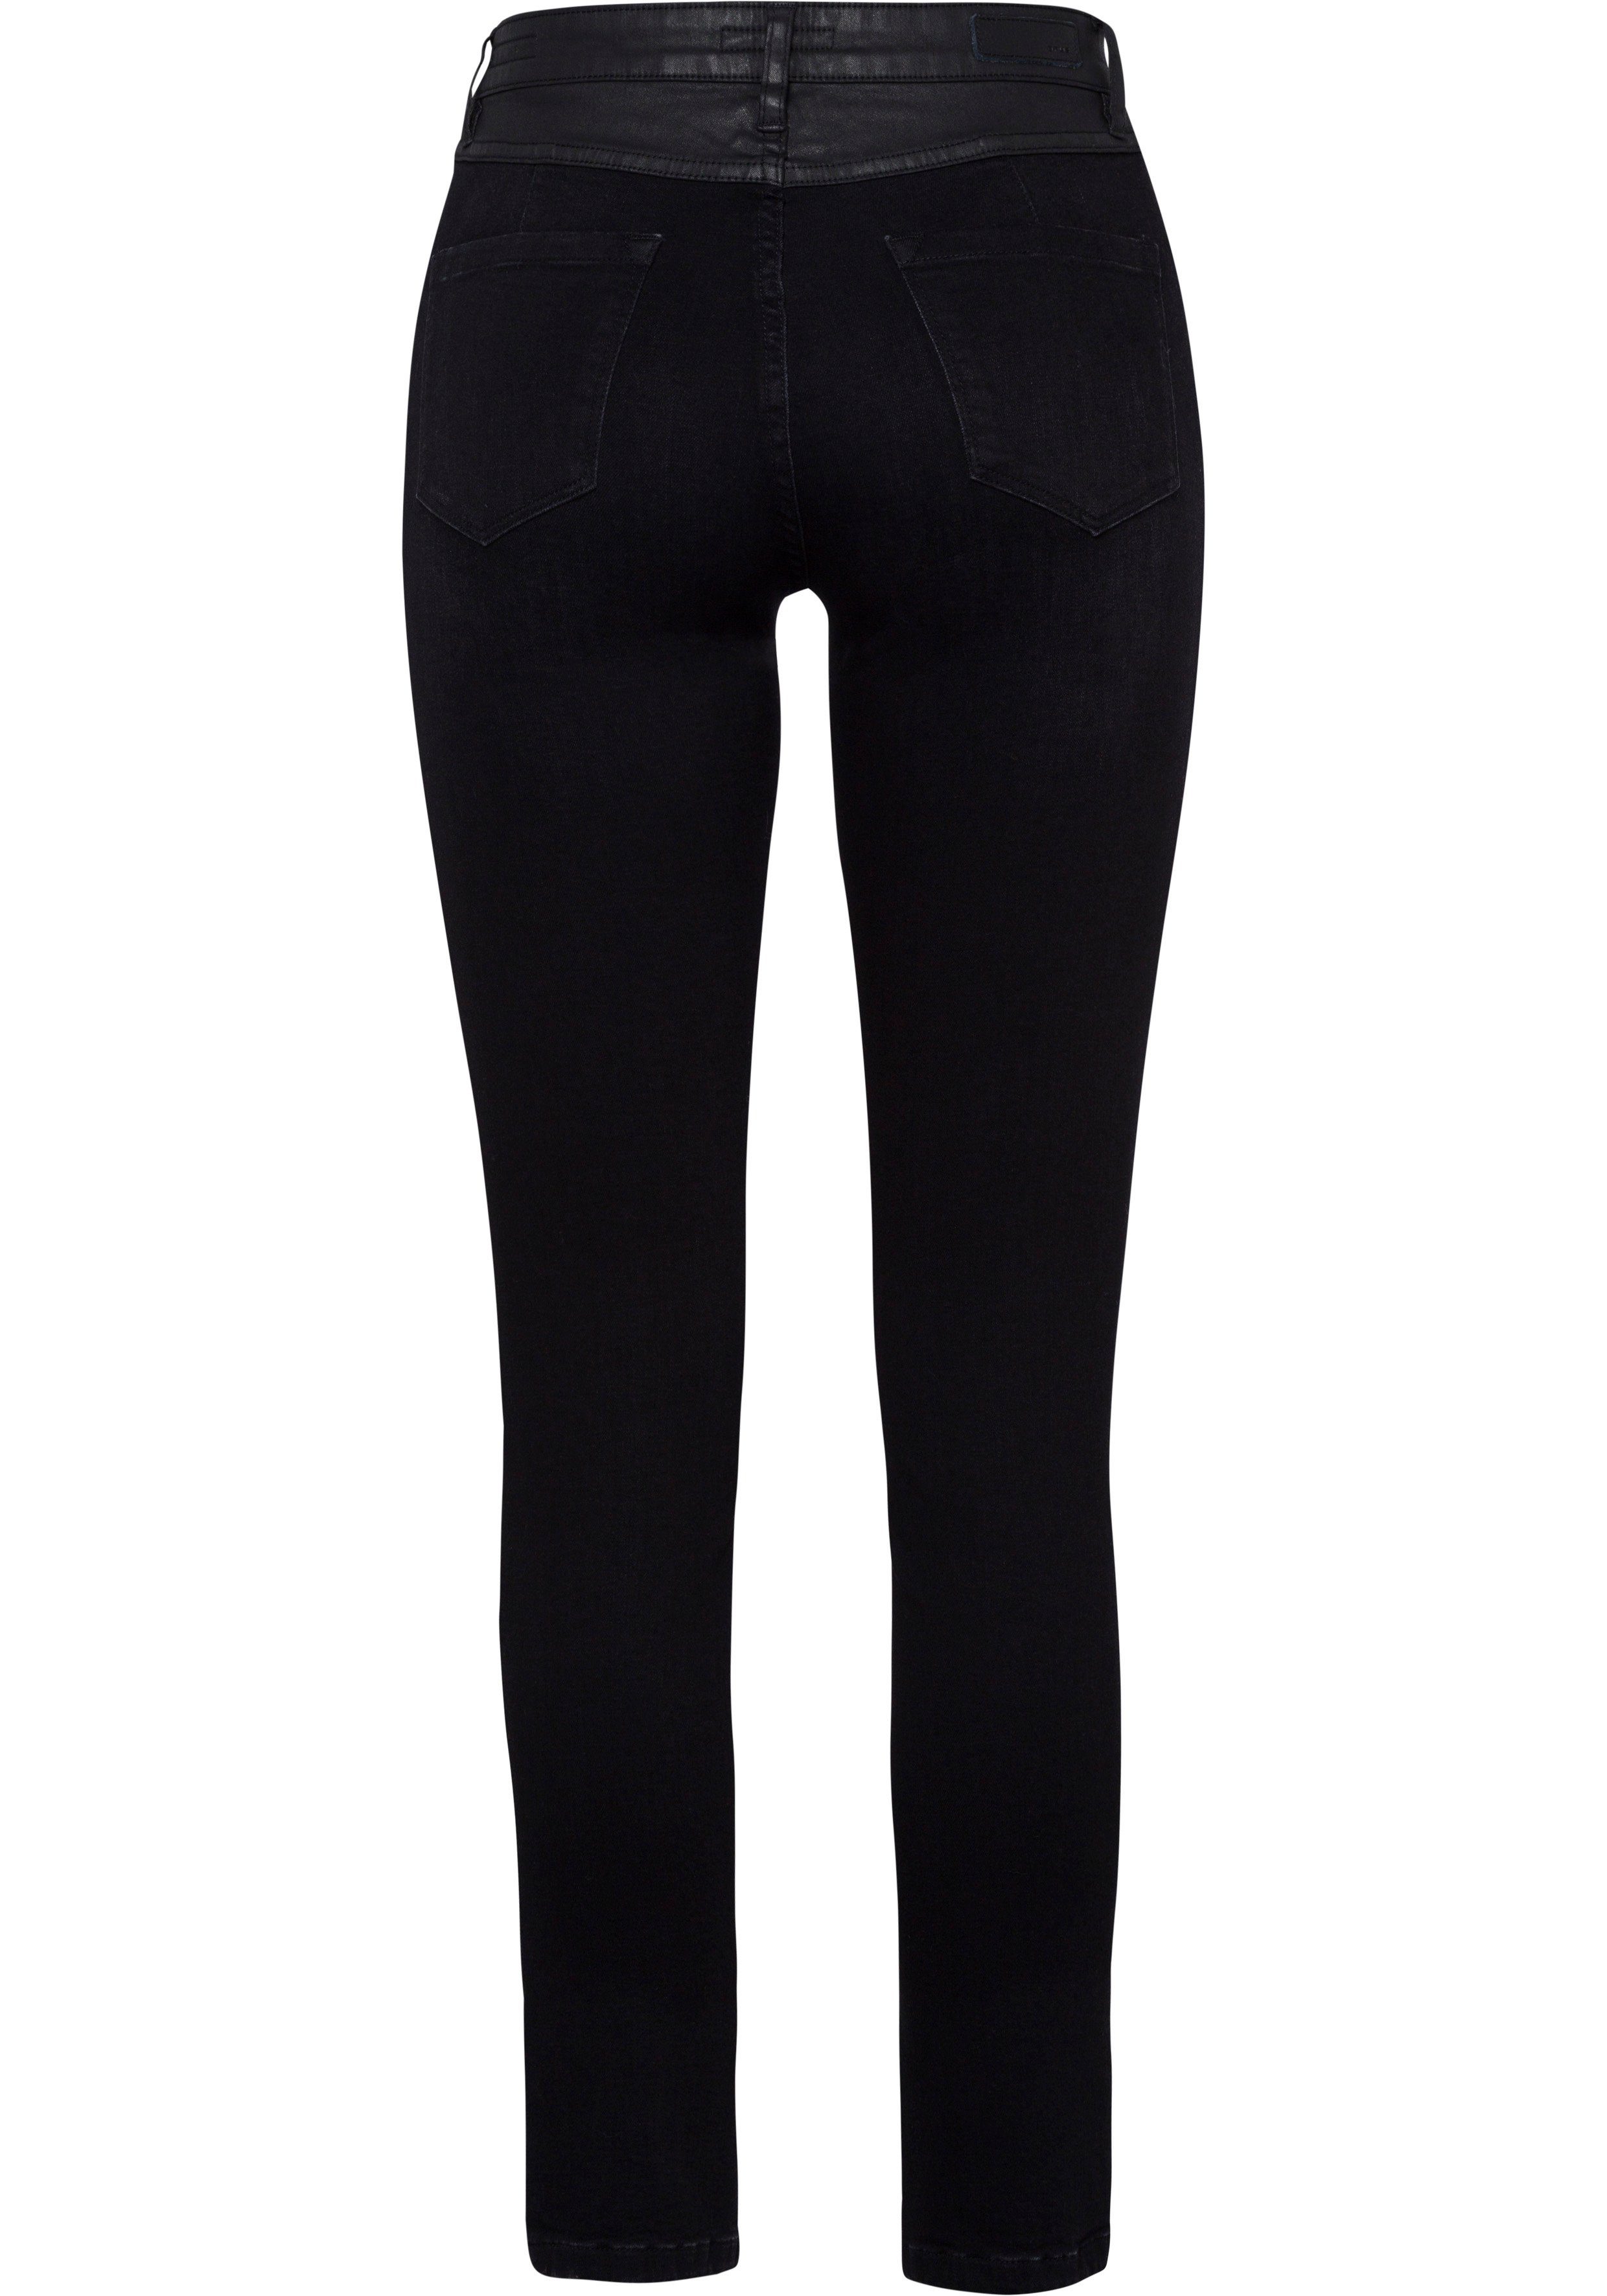 Damen Jeans OPUS 5-Pocket-Jeans Evita coated in gewaschener Denim-Optik